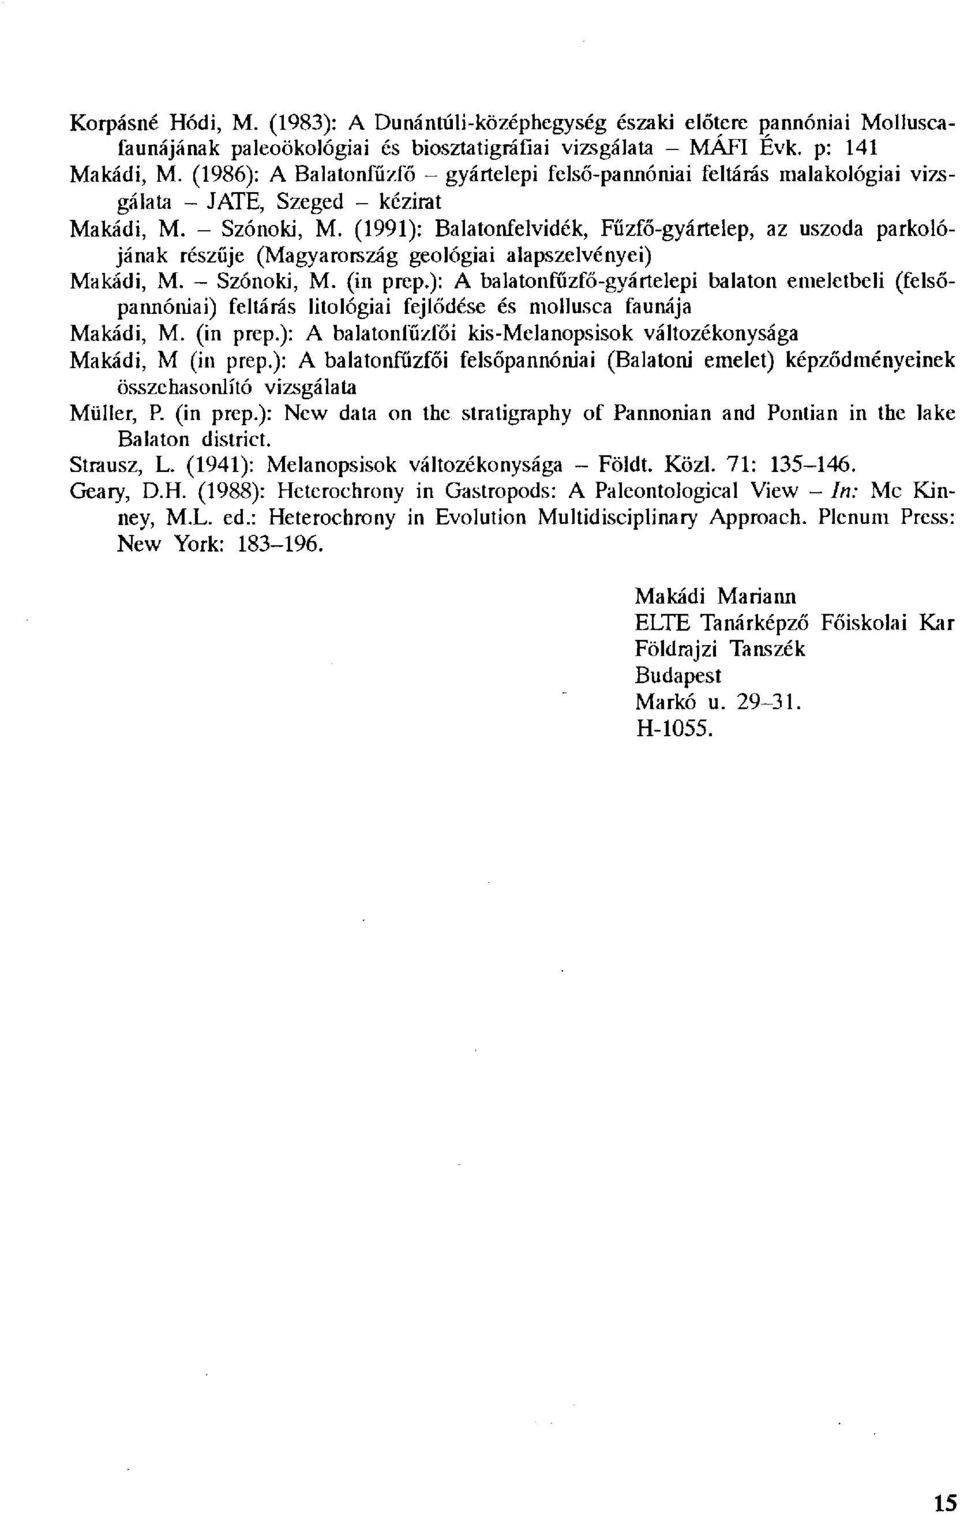 (1991): Balatonfelvidék, Fűzfő-gyártelep, az uszoda parkolójának részűje (Magyarország geológiai alapszelvényei) Makádi, M. - Szónoki, M. (in prep.